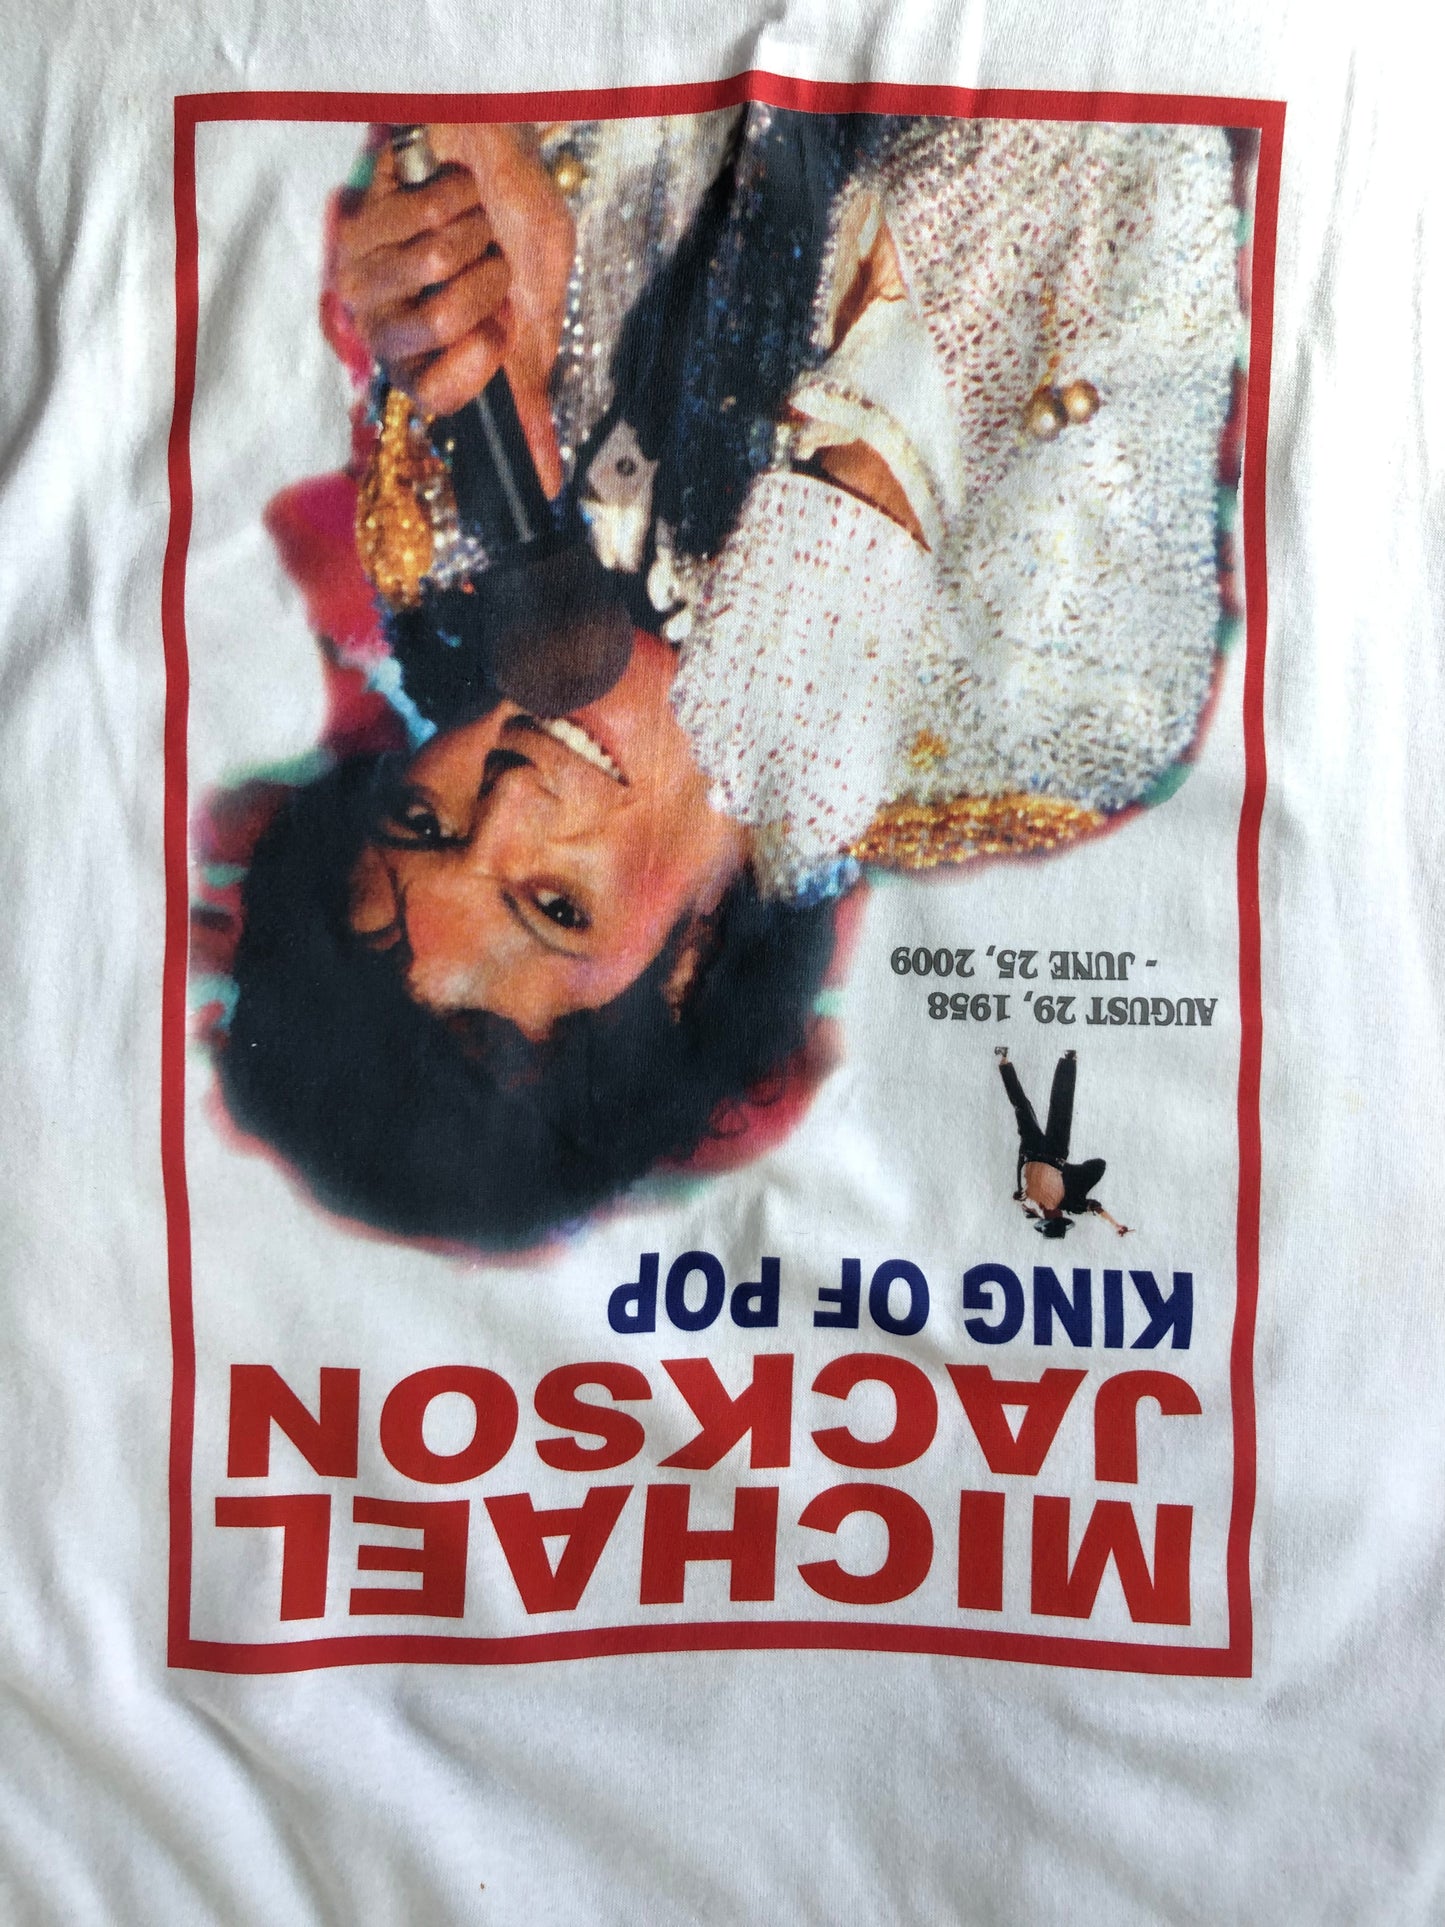 00’s Michael Jackson King of Pop RIP Rap Tshirt